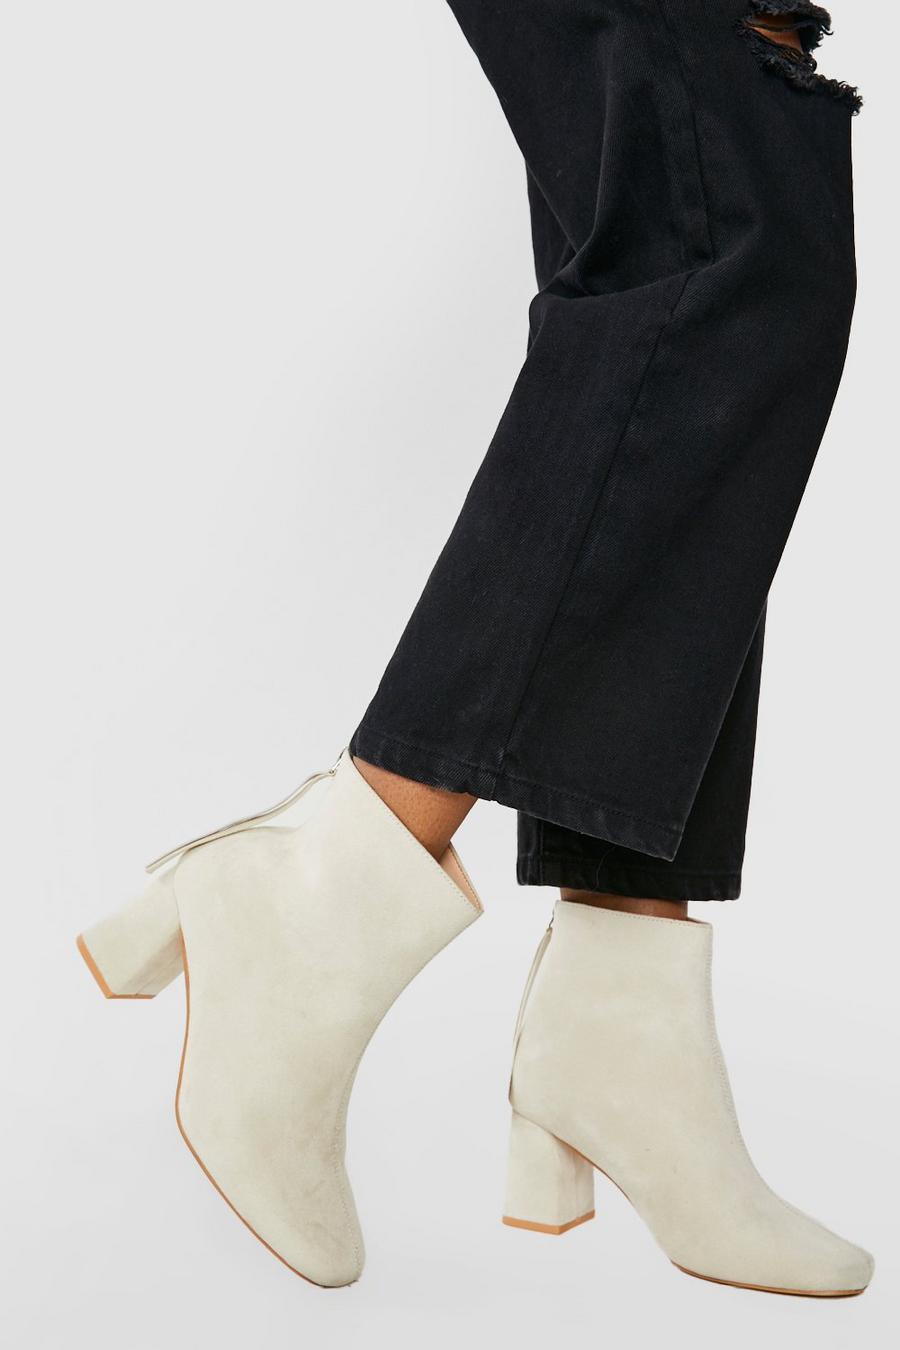 Botas calcetín de holgura ancha con flecos y puntera cuadrada, Cream bianco